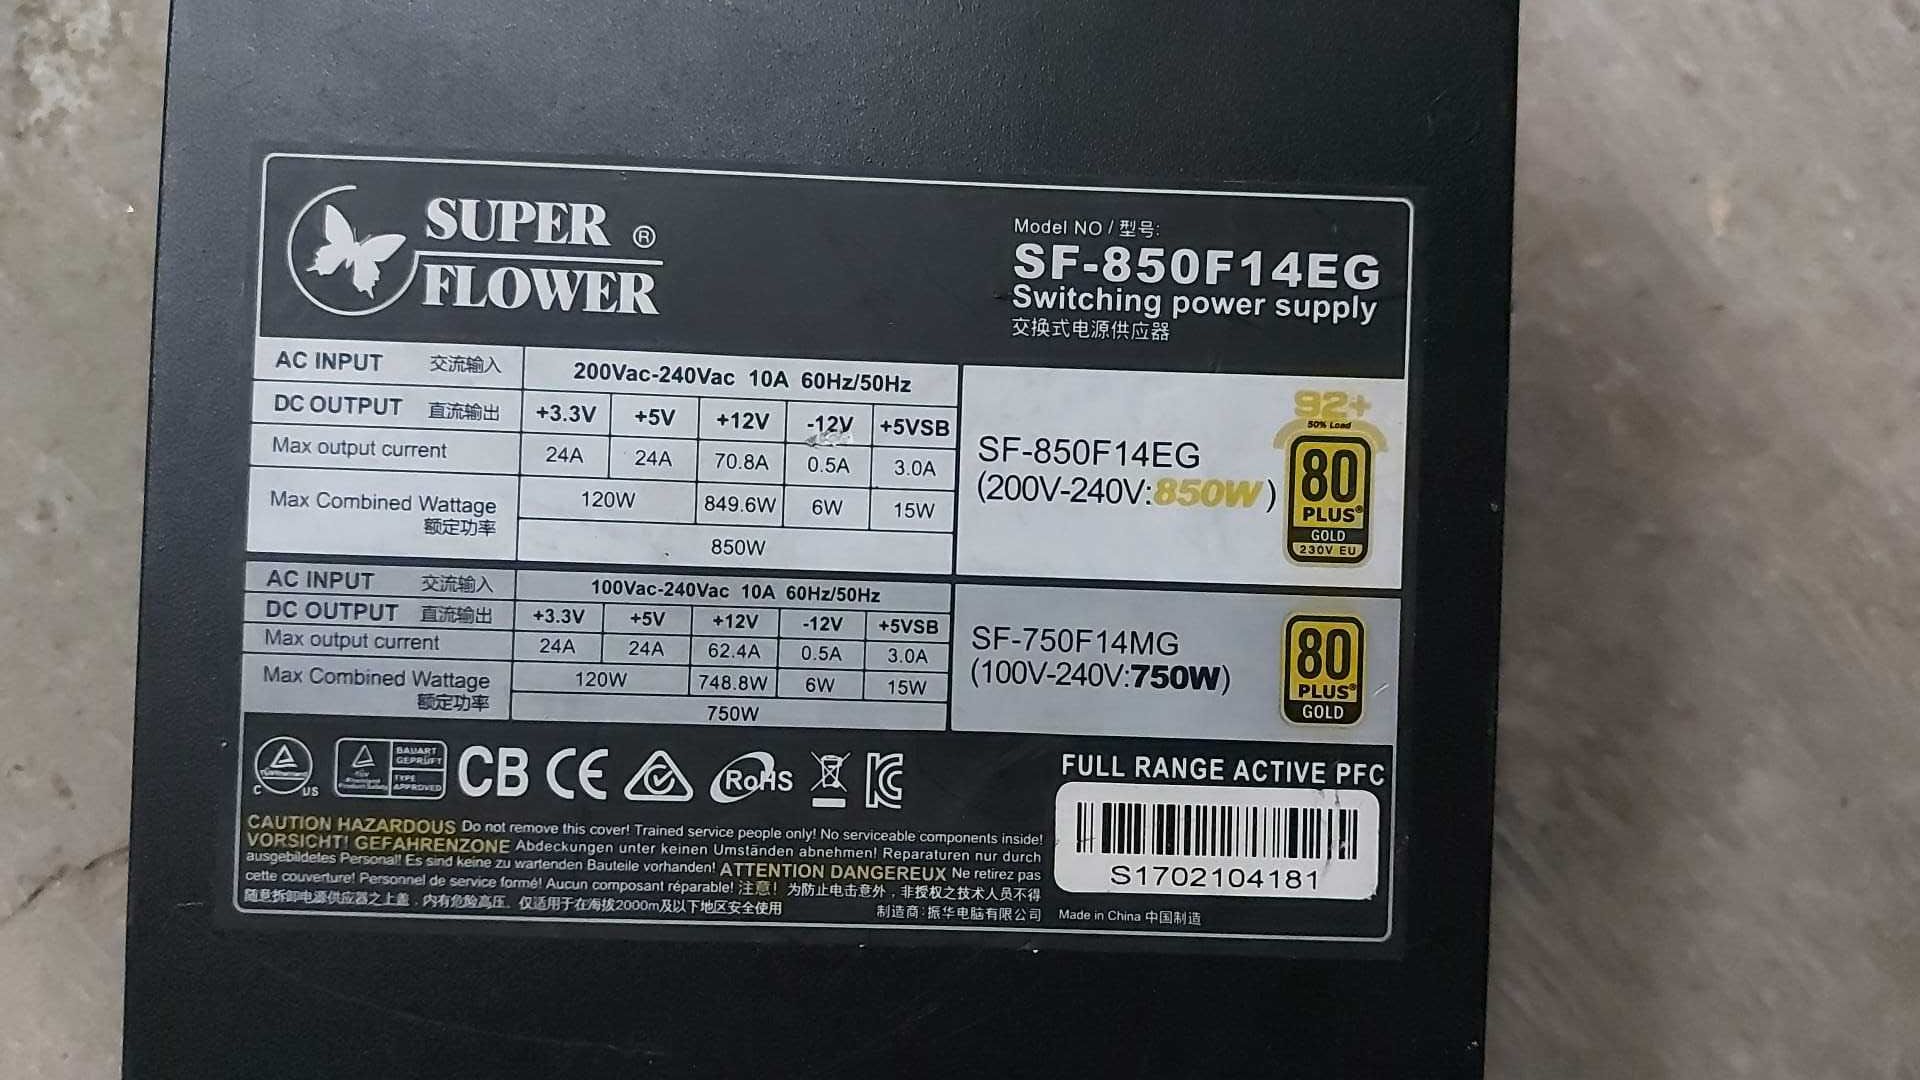 sursa Super Flower Leadex II 850W Power Supply 80 Gold (SF-850F14EG)